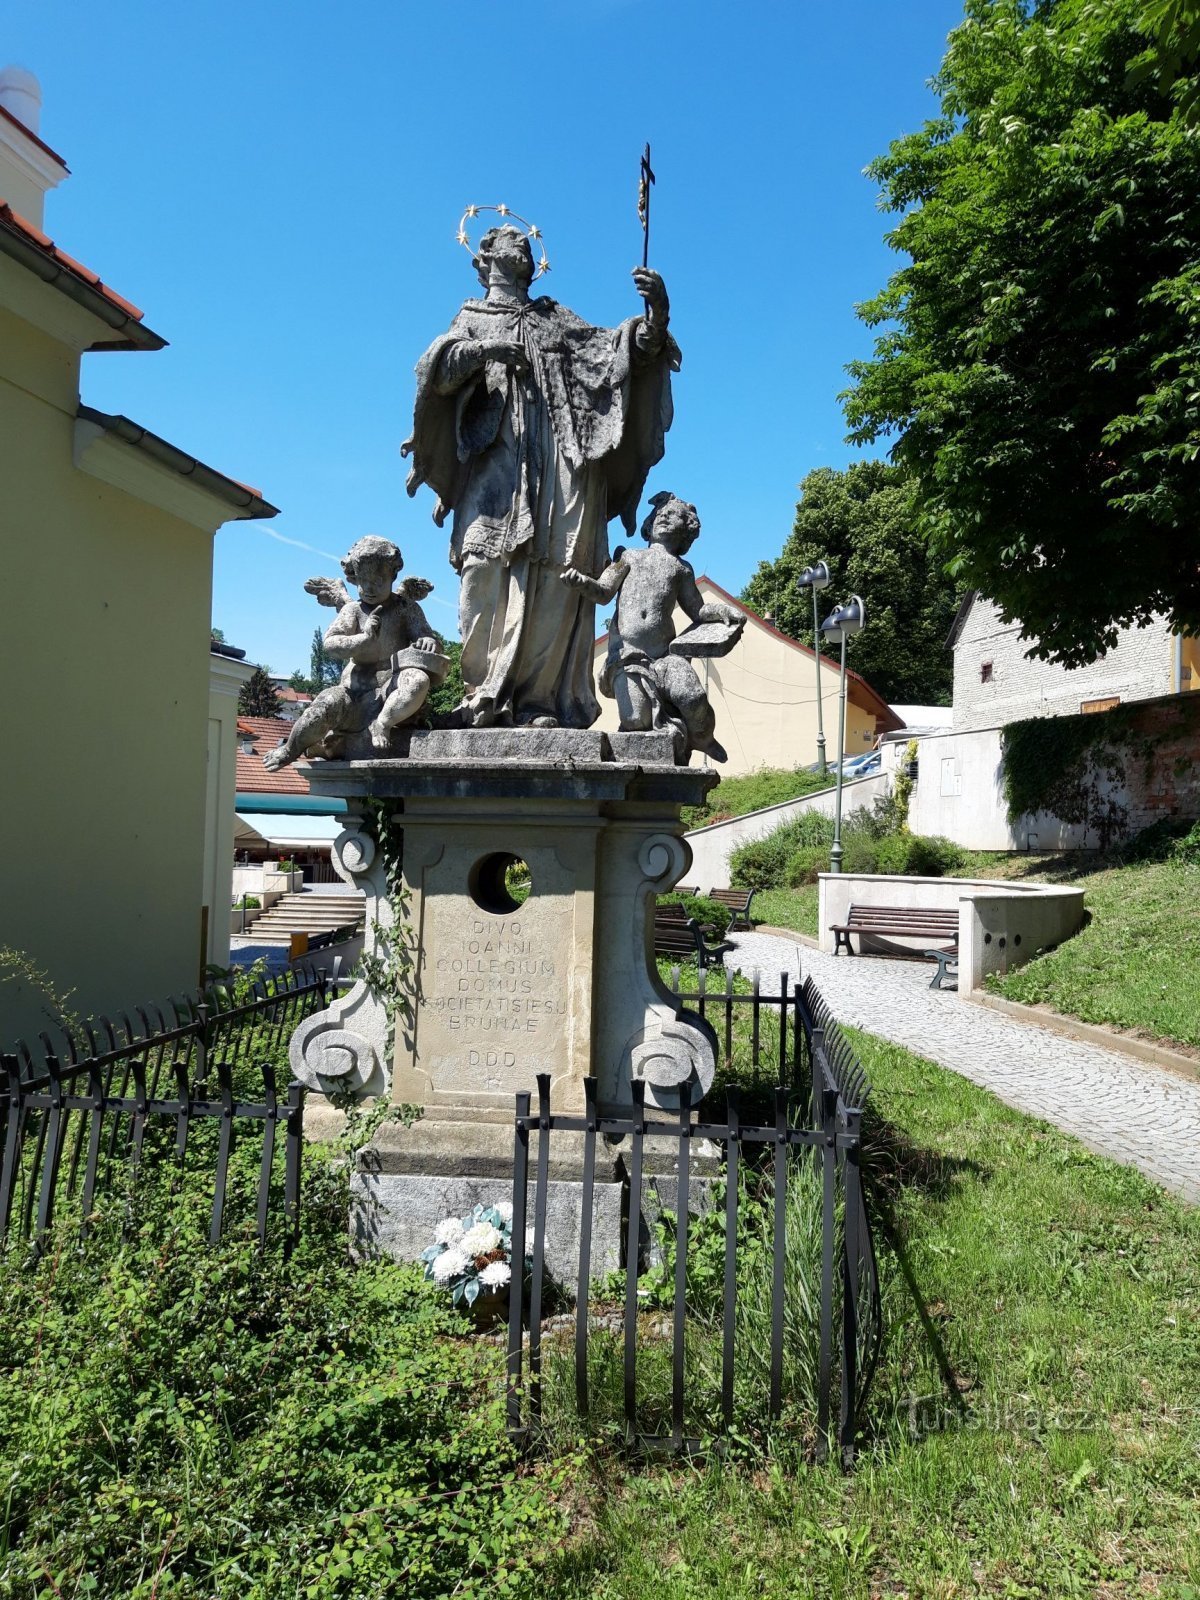 Άγαλμα του Αγίου Ιωάννη του Nepomuk στο Μπρνο, πλατεία Palacké